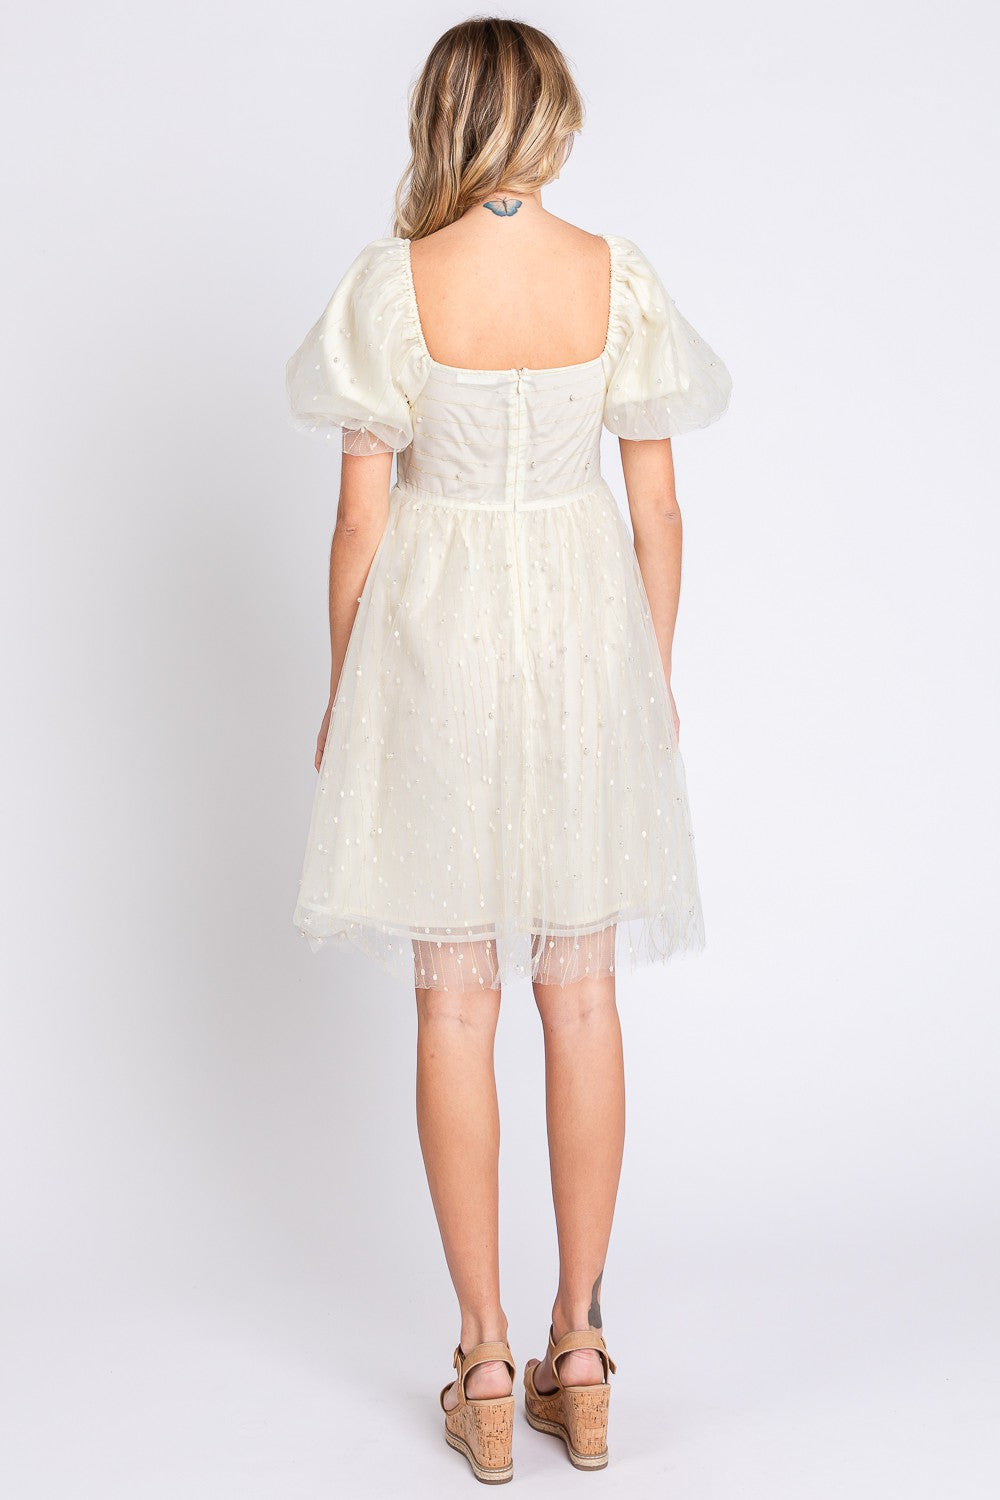 GeeGee Pearl Mesh Puff Sleeve Babydoll Dress - Tigbuls Variety Fashion